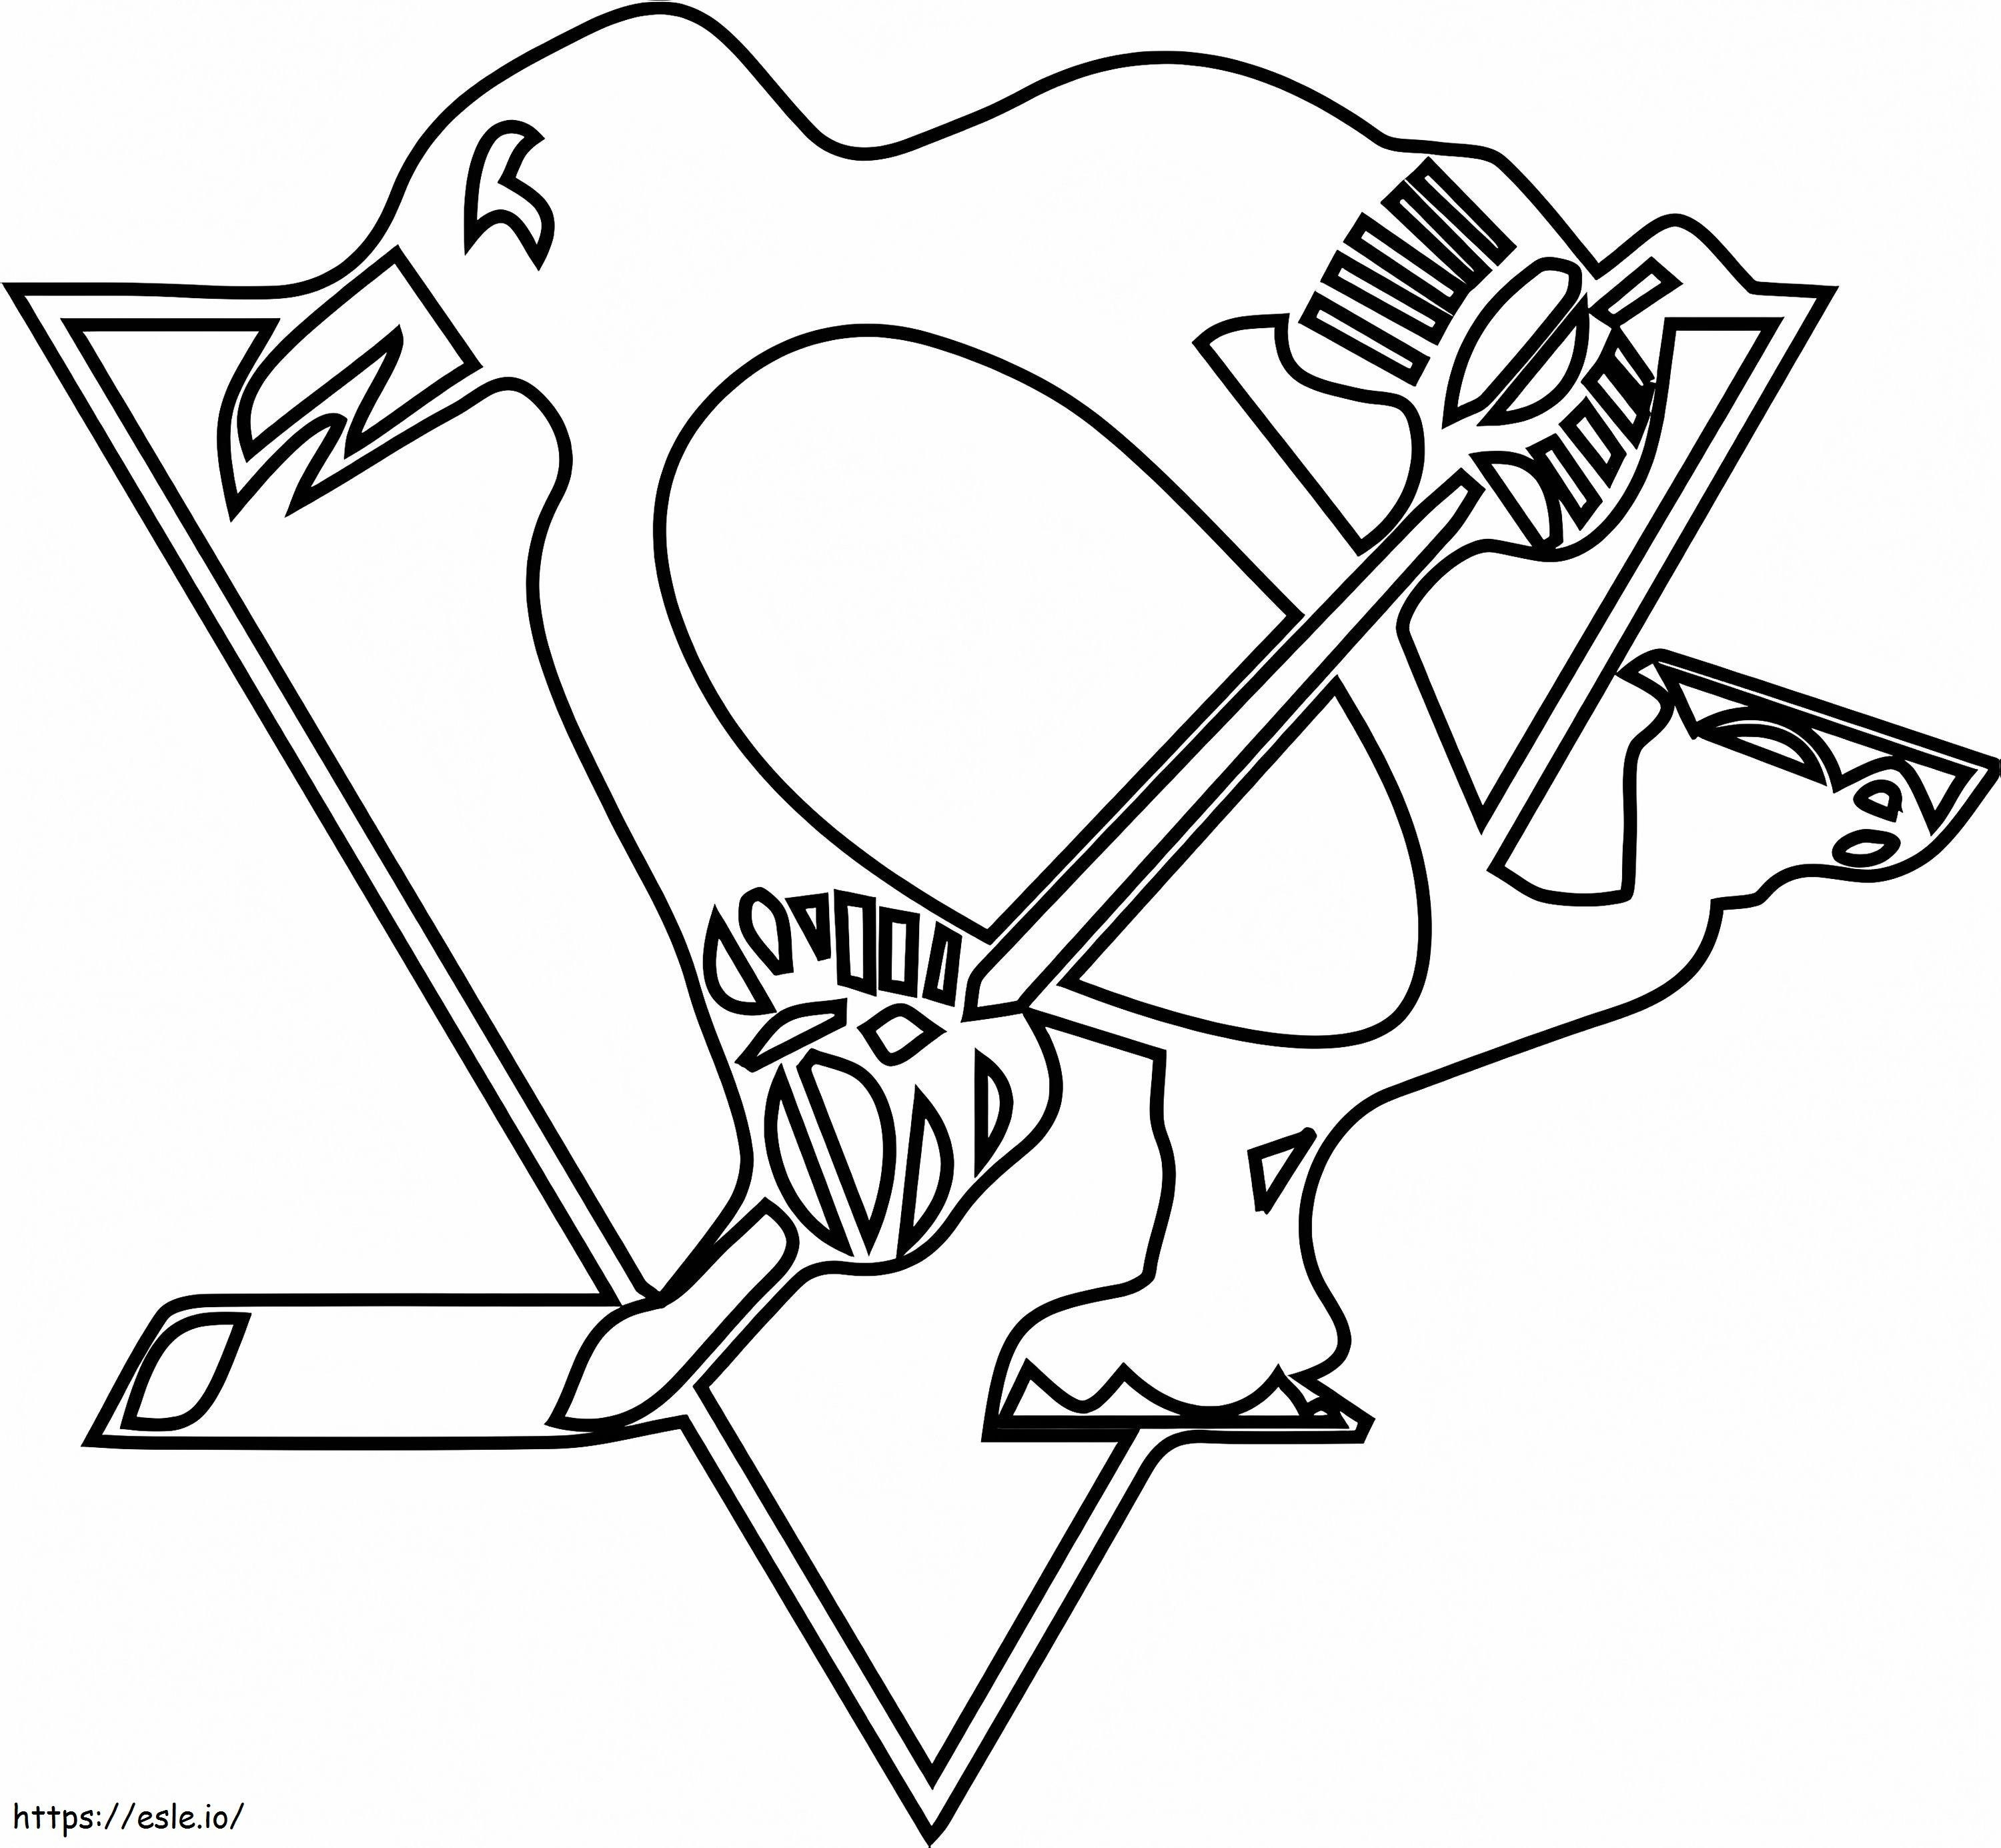 Coloriage Logo des Penguins de Pittsburgh à imprimer dessin